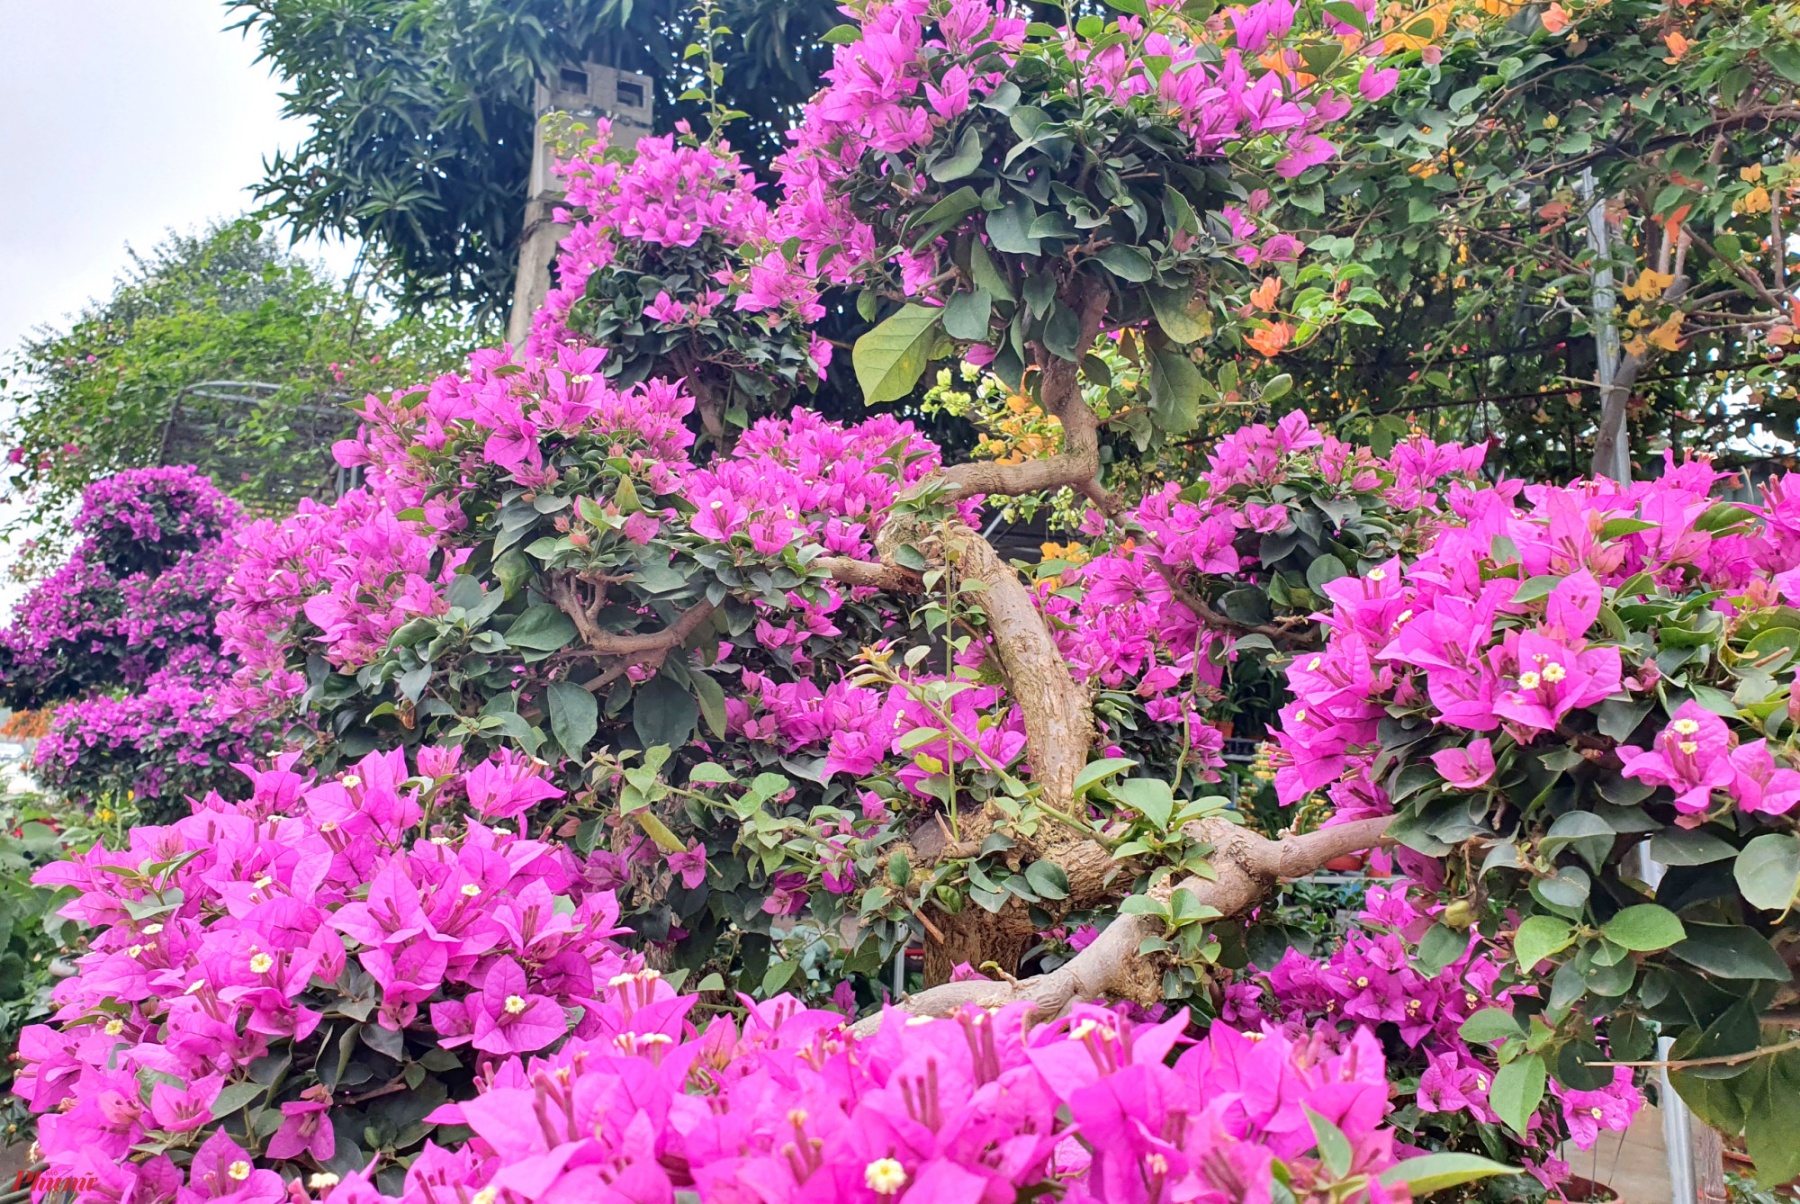 Không sặc sỡ như hoa giấy ngũ sắc, loài hoa giấy bonsai lại thu hút được nhiều người mua bởi giá cả phải chăng, thế độc và nhiều hoa.